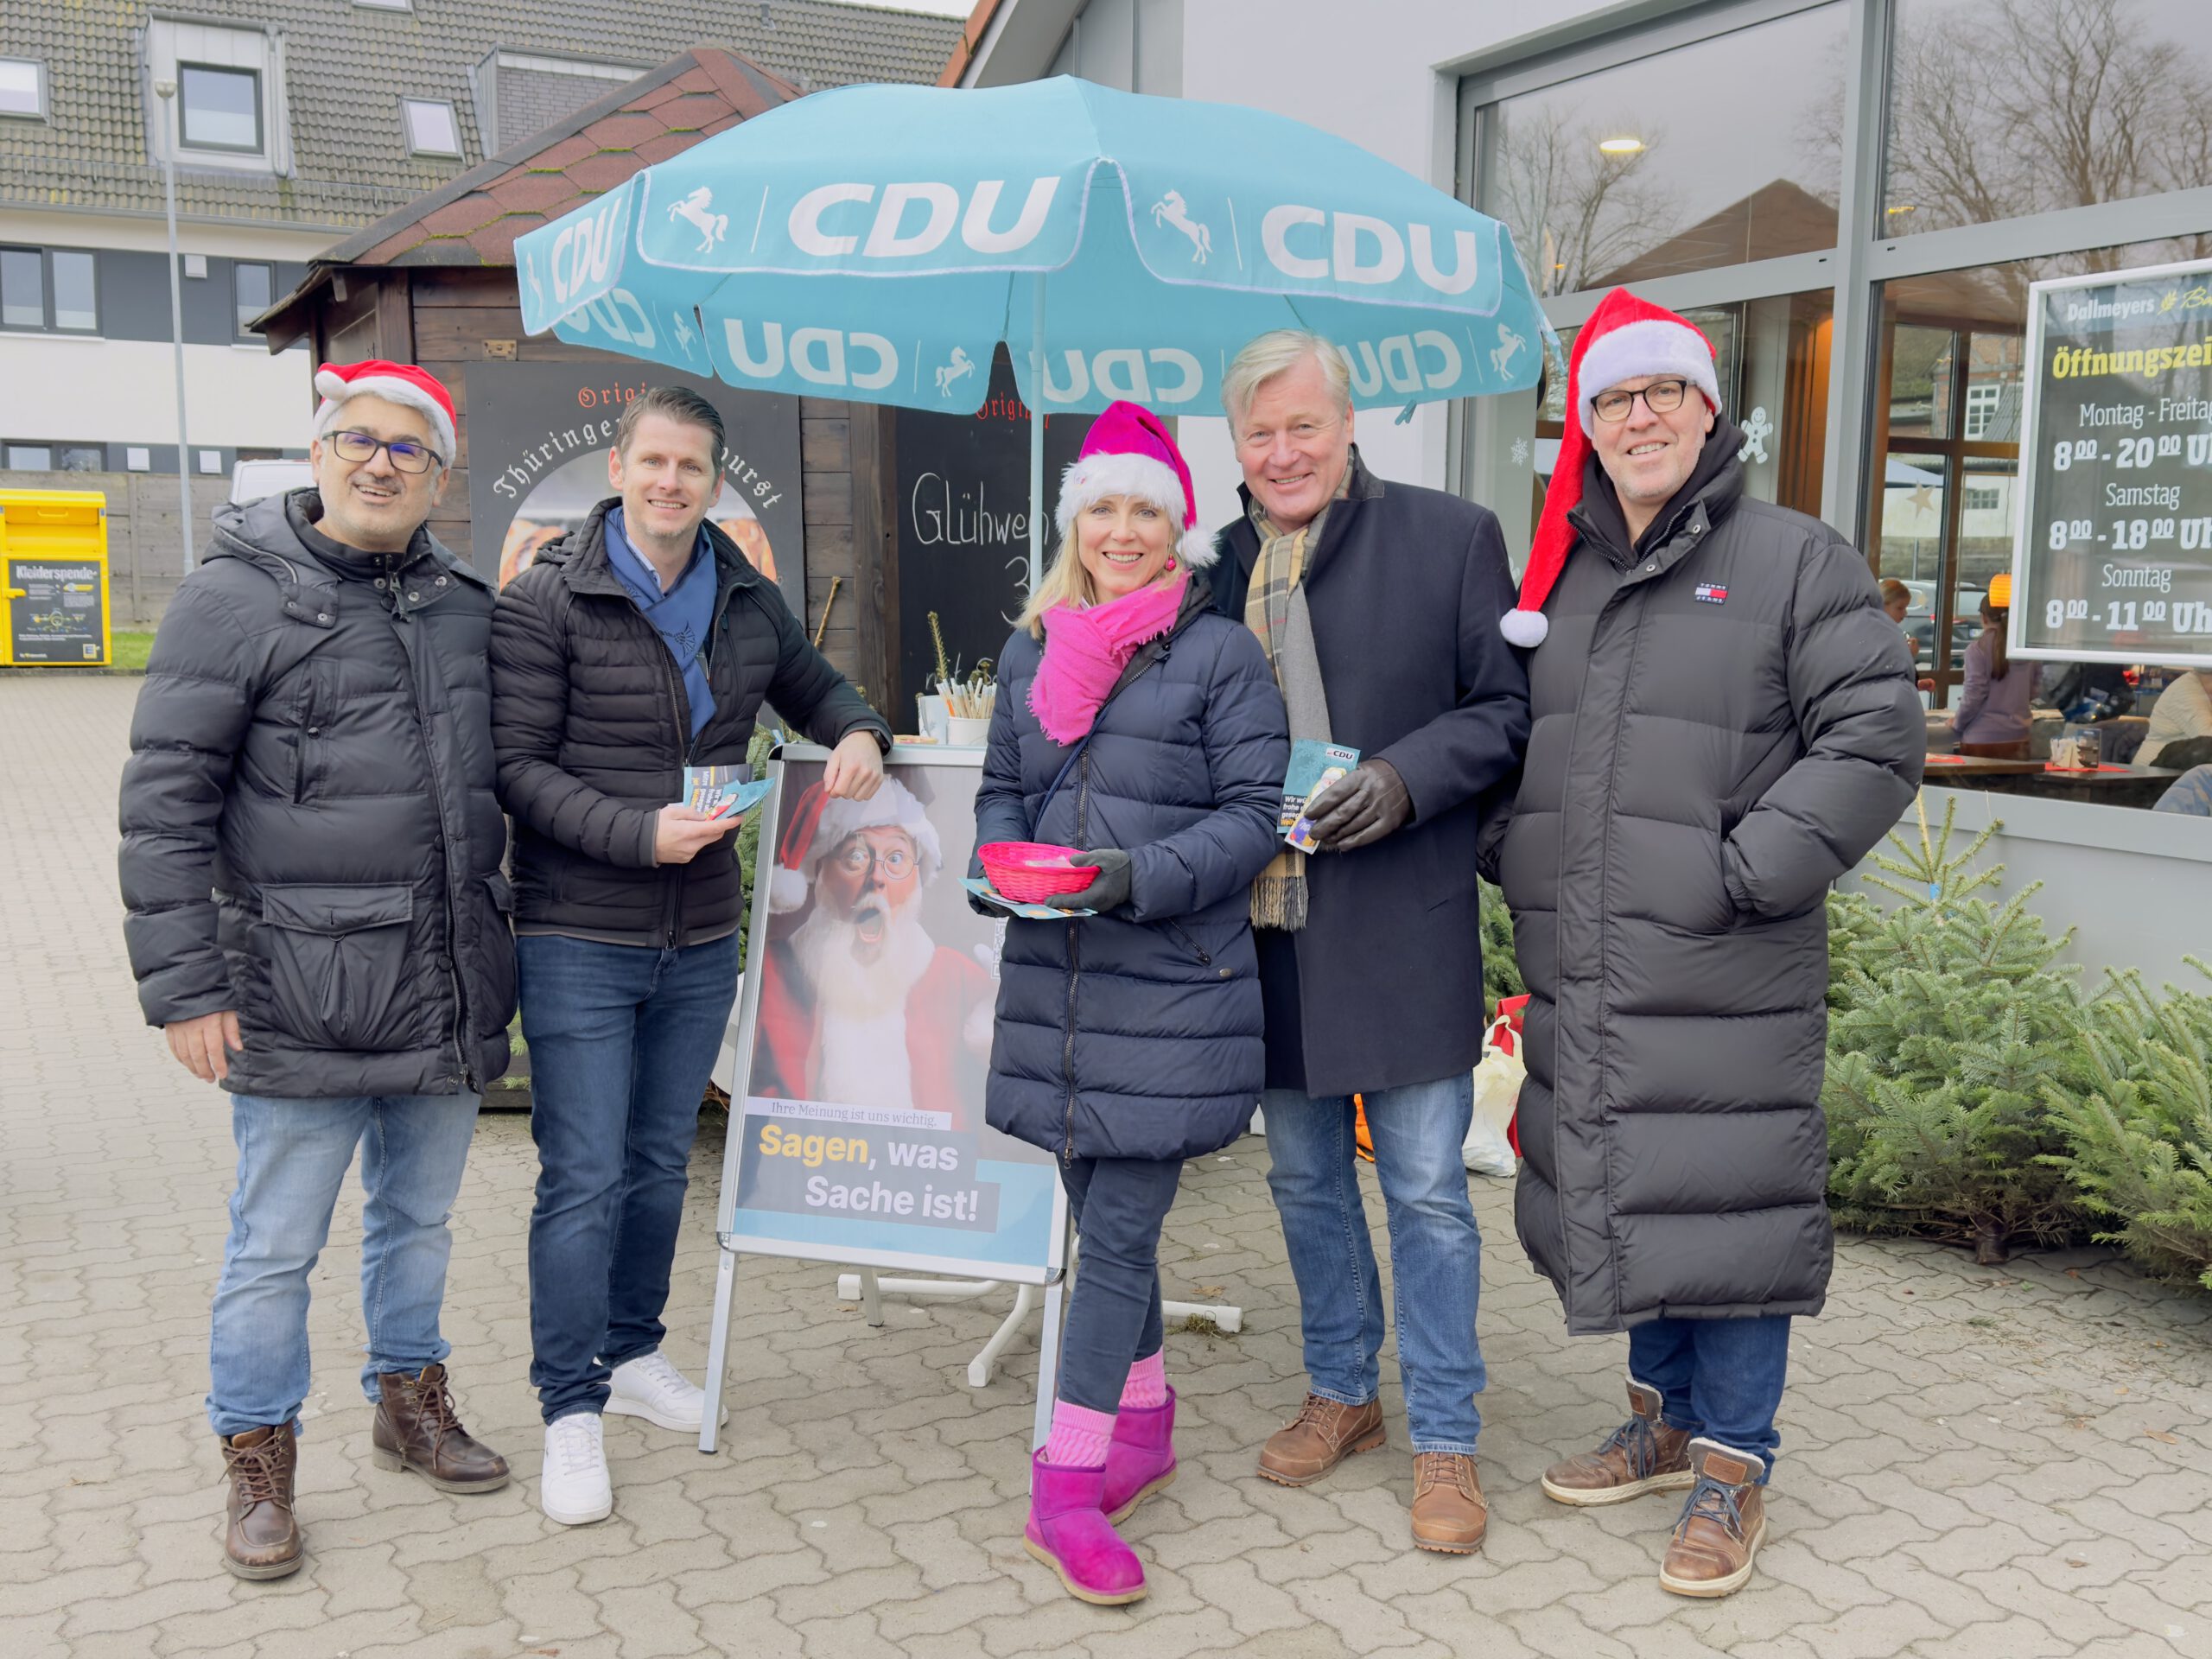 CDU Weihnachtsstand vor EDEKA Meyer – Gemeinschaft im Mittelpunkt